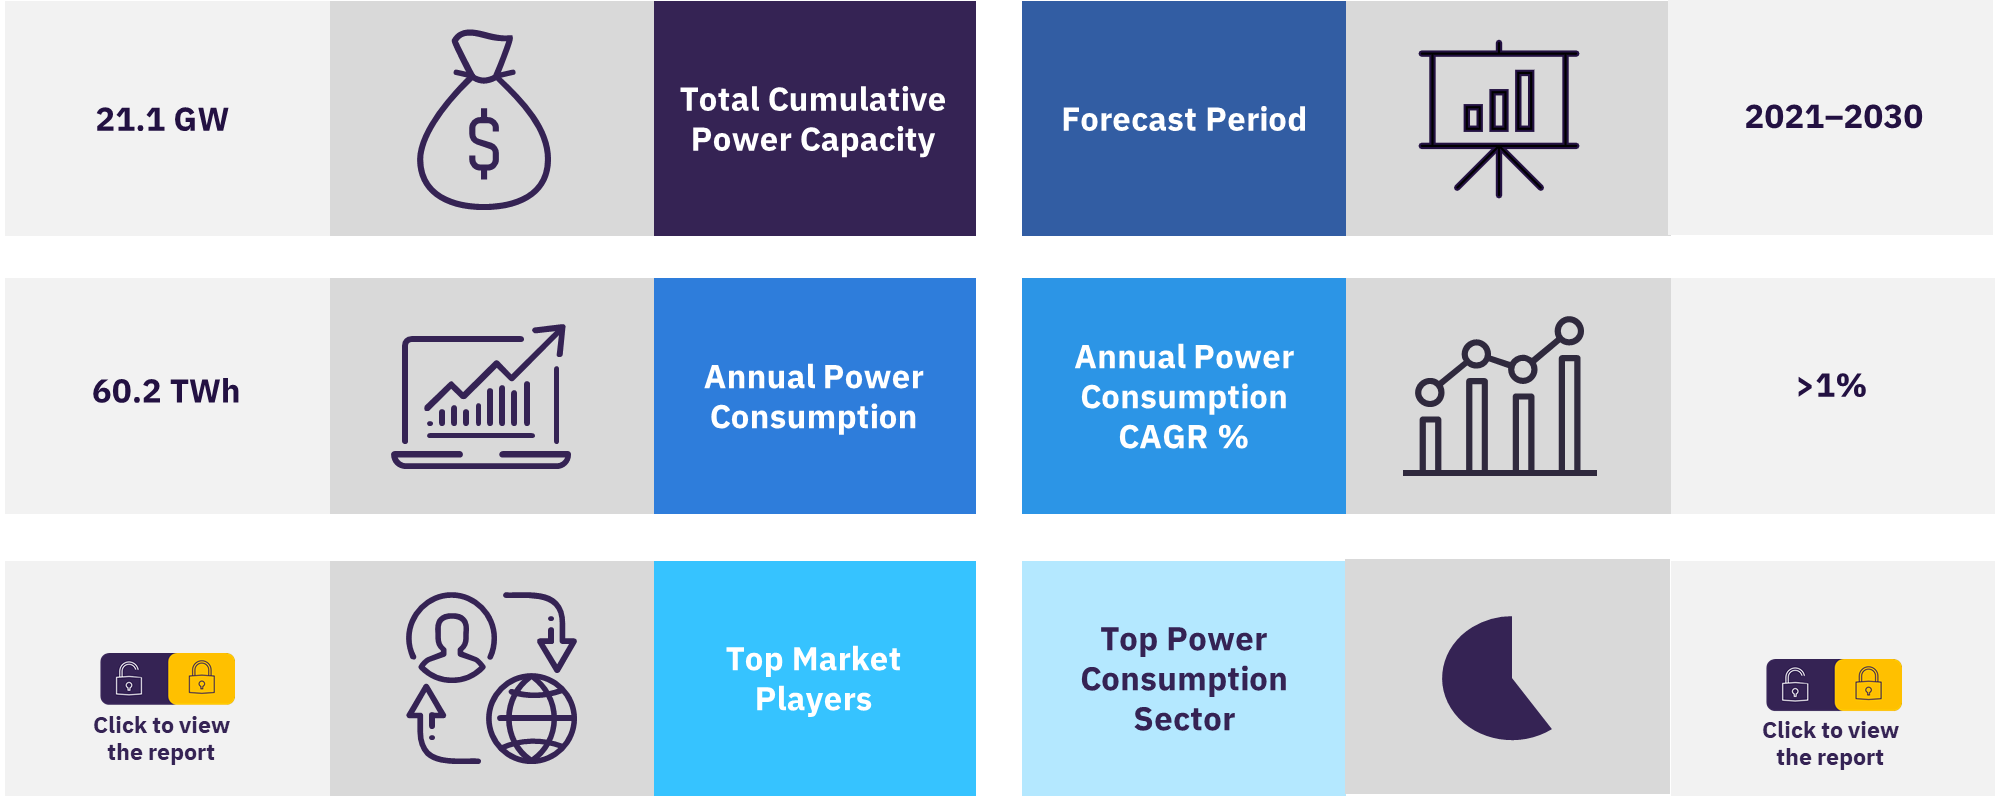 Czech Republic power market overview